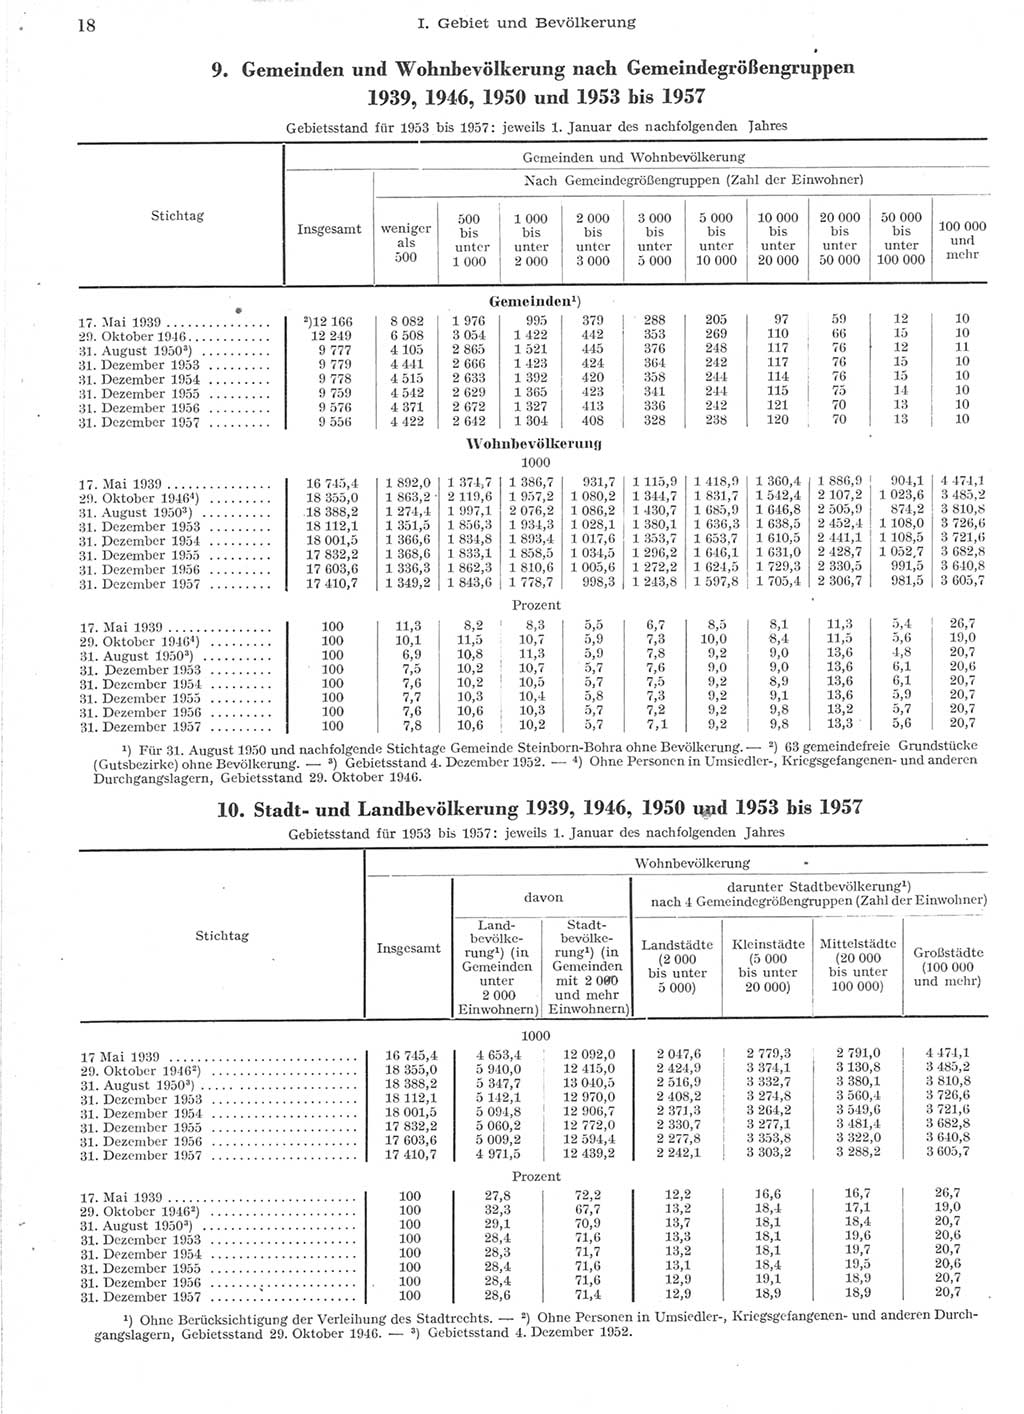 Statistisches Jahrbuch der Deutschen Demokratischen Republik (DDR) 1957, Seite 18 (Stat. Jb. DDR 1957, S. 18)